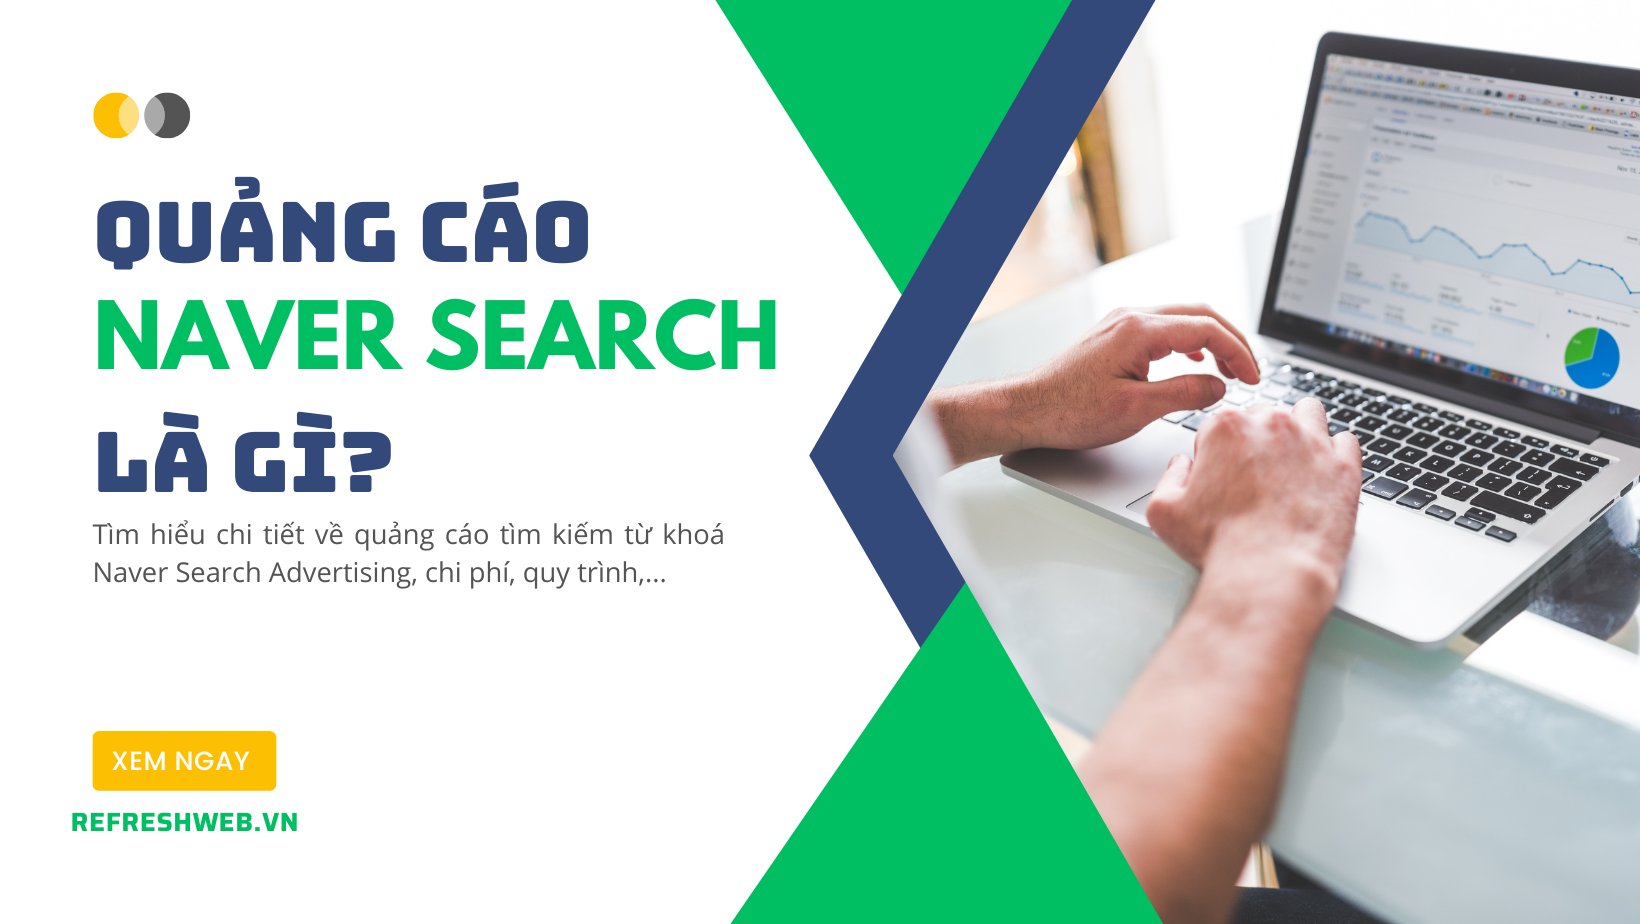 Quảng cáo tìm kiếm Naver (Naver Search) là gì? Chi phí bao nhiêu?